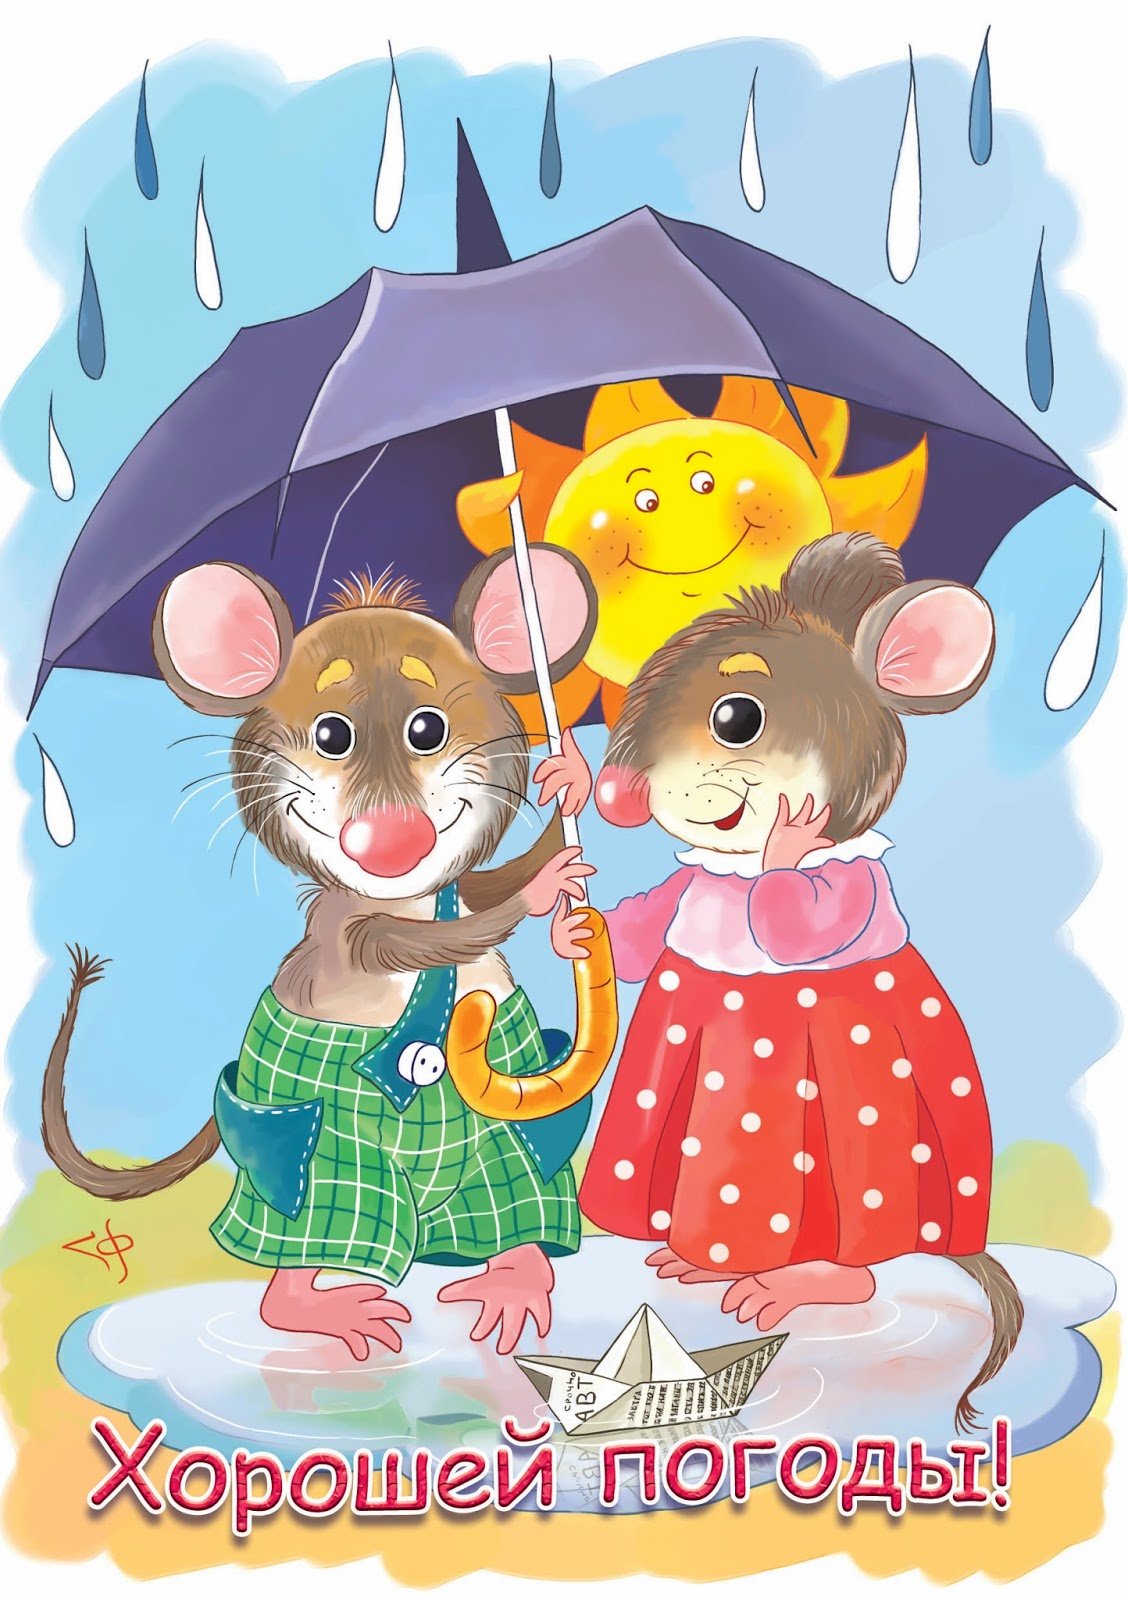 Невзирая на погоду. Мышь под зонтом. Мышка с зонтиком. Открытки хорошего настроения в дождливую погоду. Мышь с зонтом.